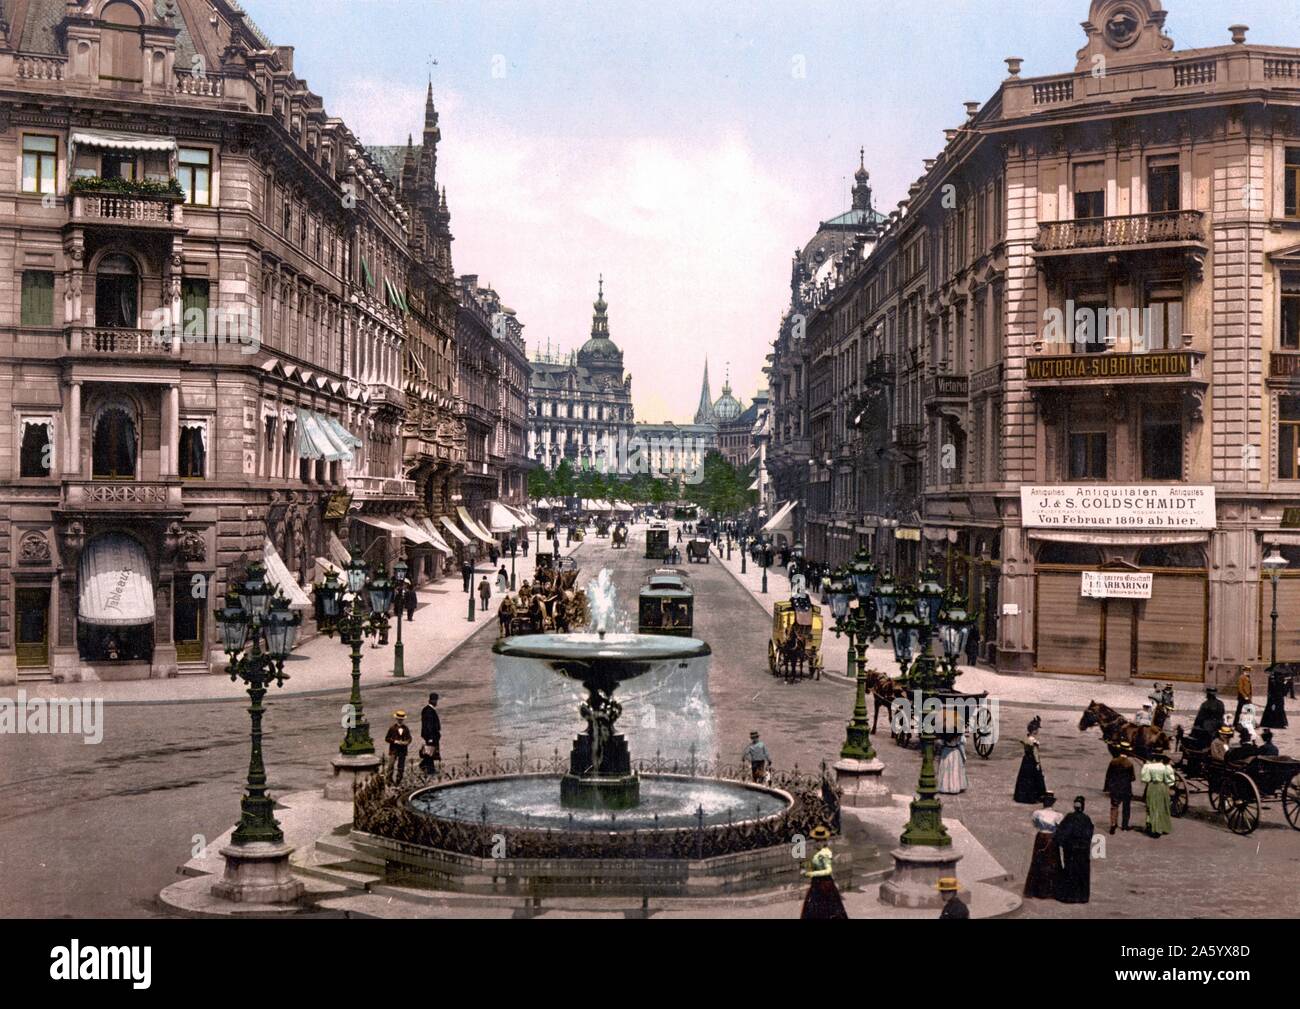 Straßenszene in Kaiserstraße, Frankfurt am Main 1903. Die jüdischen Besitz, Kunst und antiken Firma J & S Goldschmidt, war der königliche Hoflieferant des russischen Zaren vor dem ersten Weltkrieg. Stockfoto